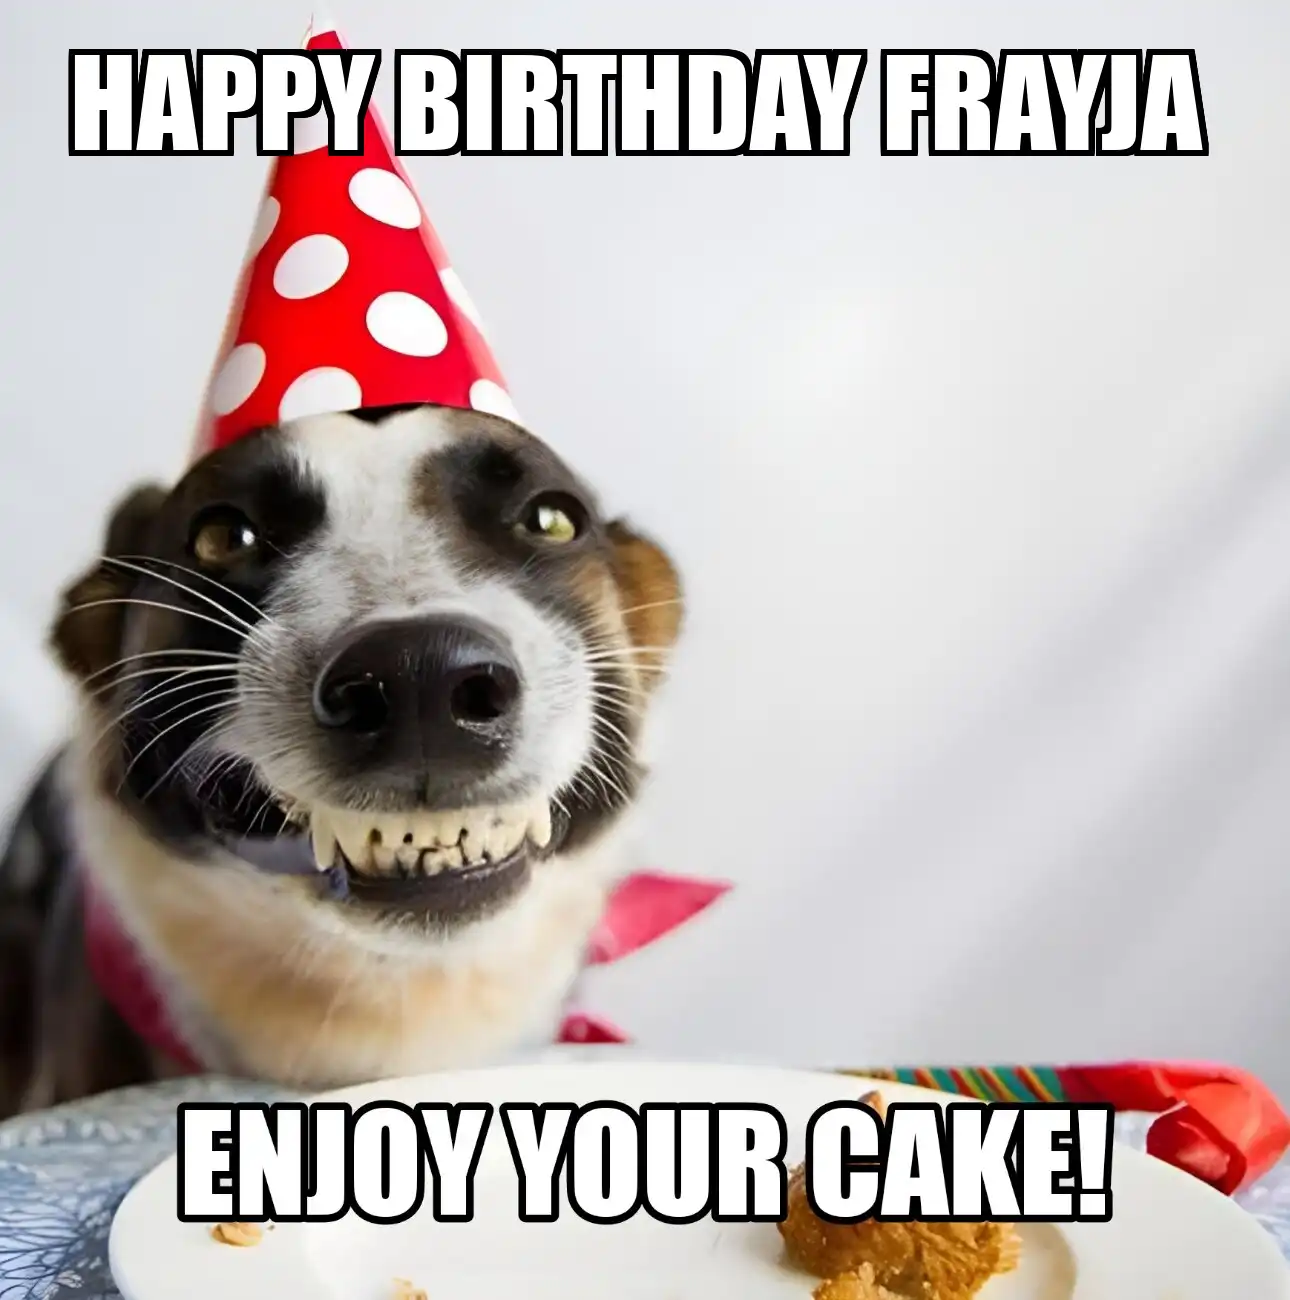 Happy Birthday Frayja Enjoy Your Cake Dog Meme